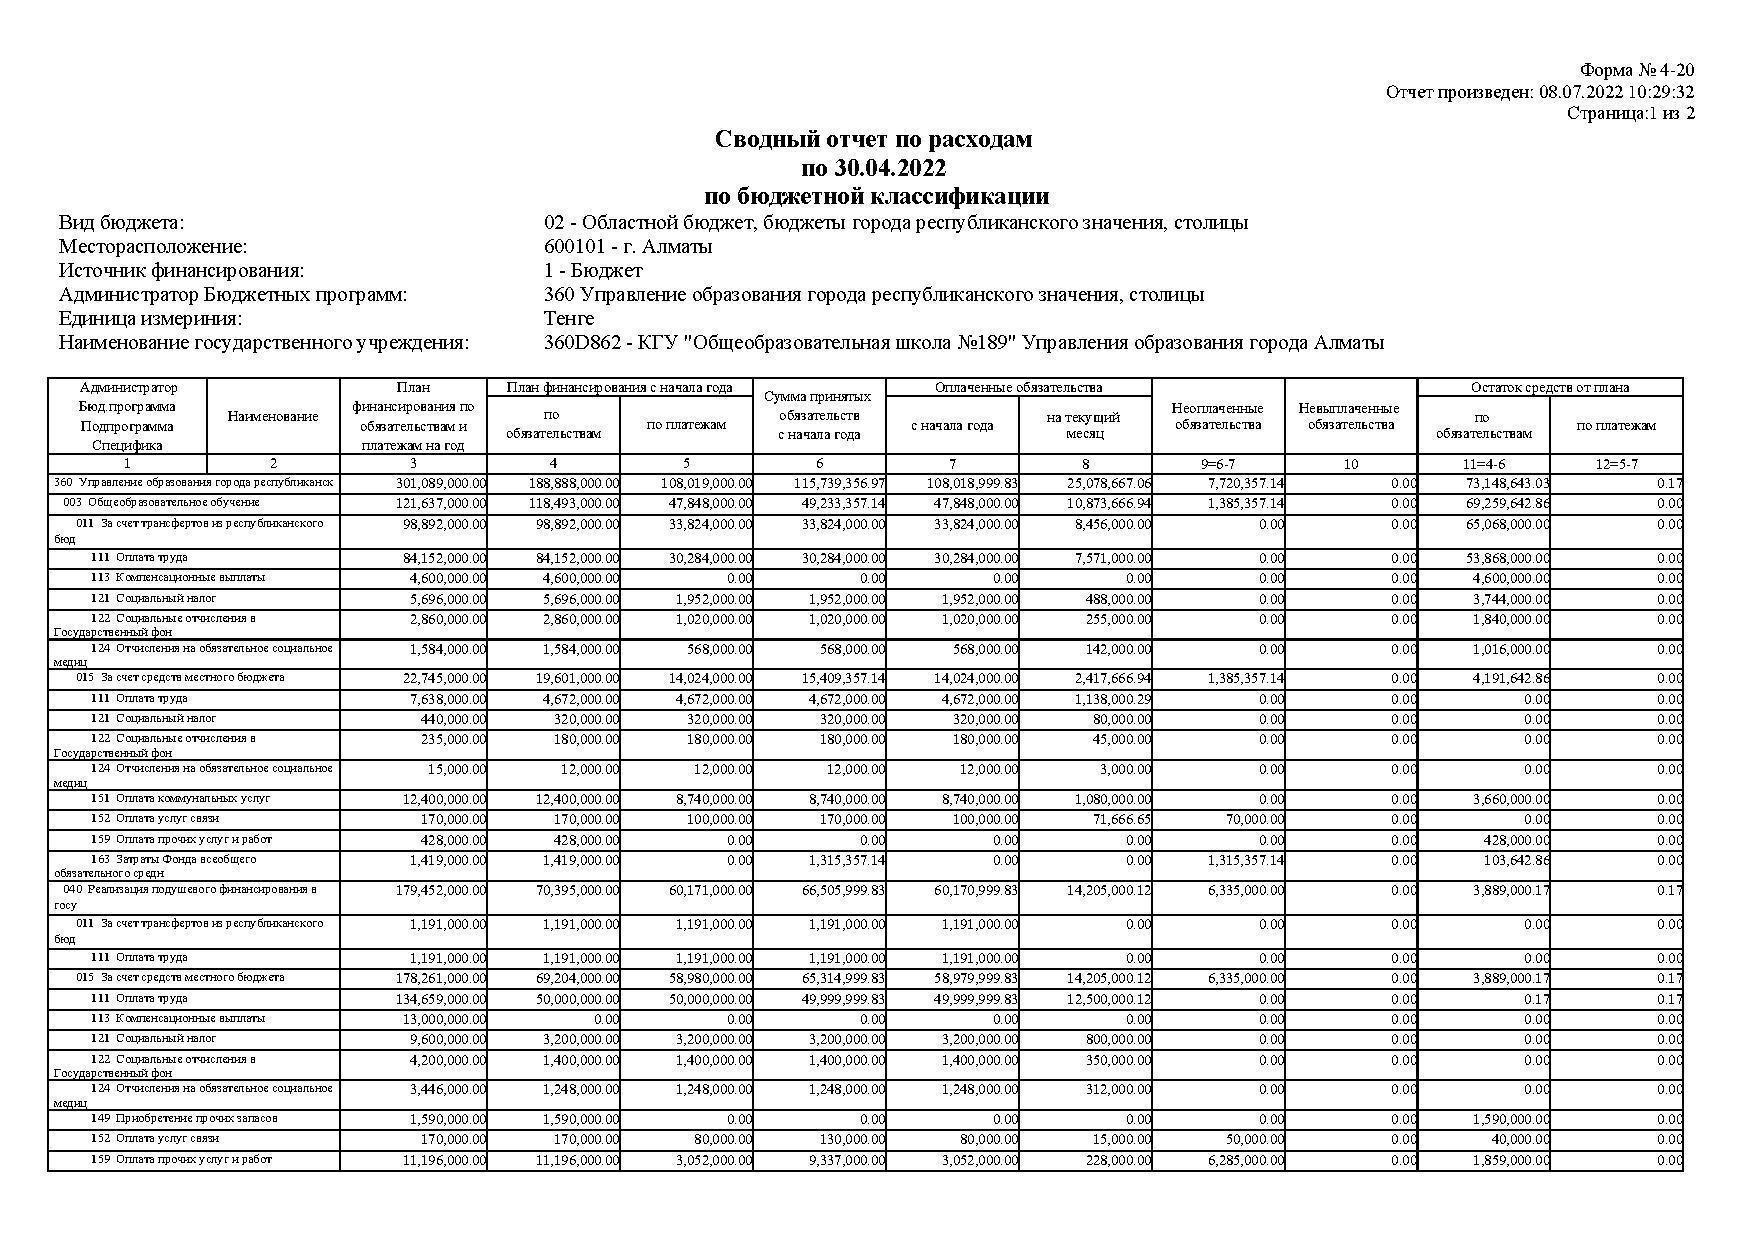 Сводный отчет по расходам по 30.04.2022